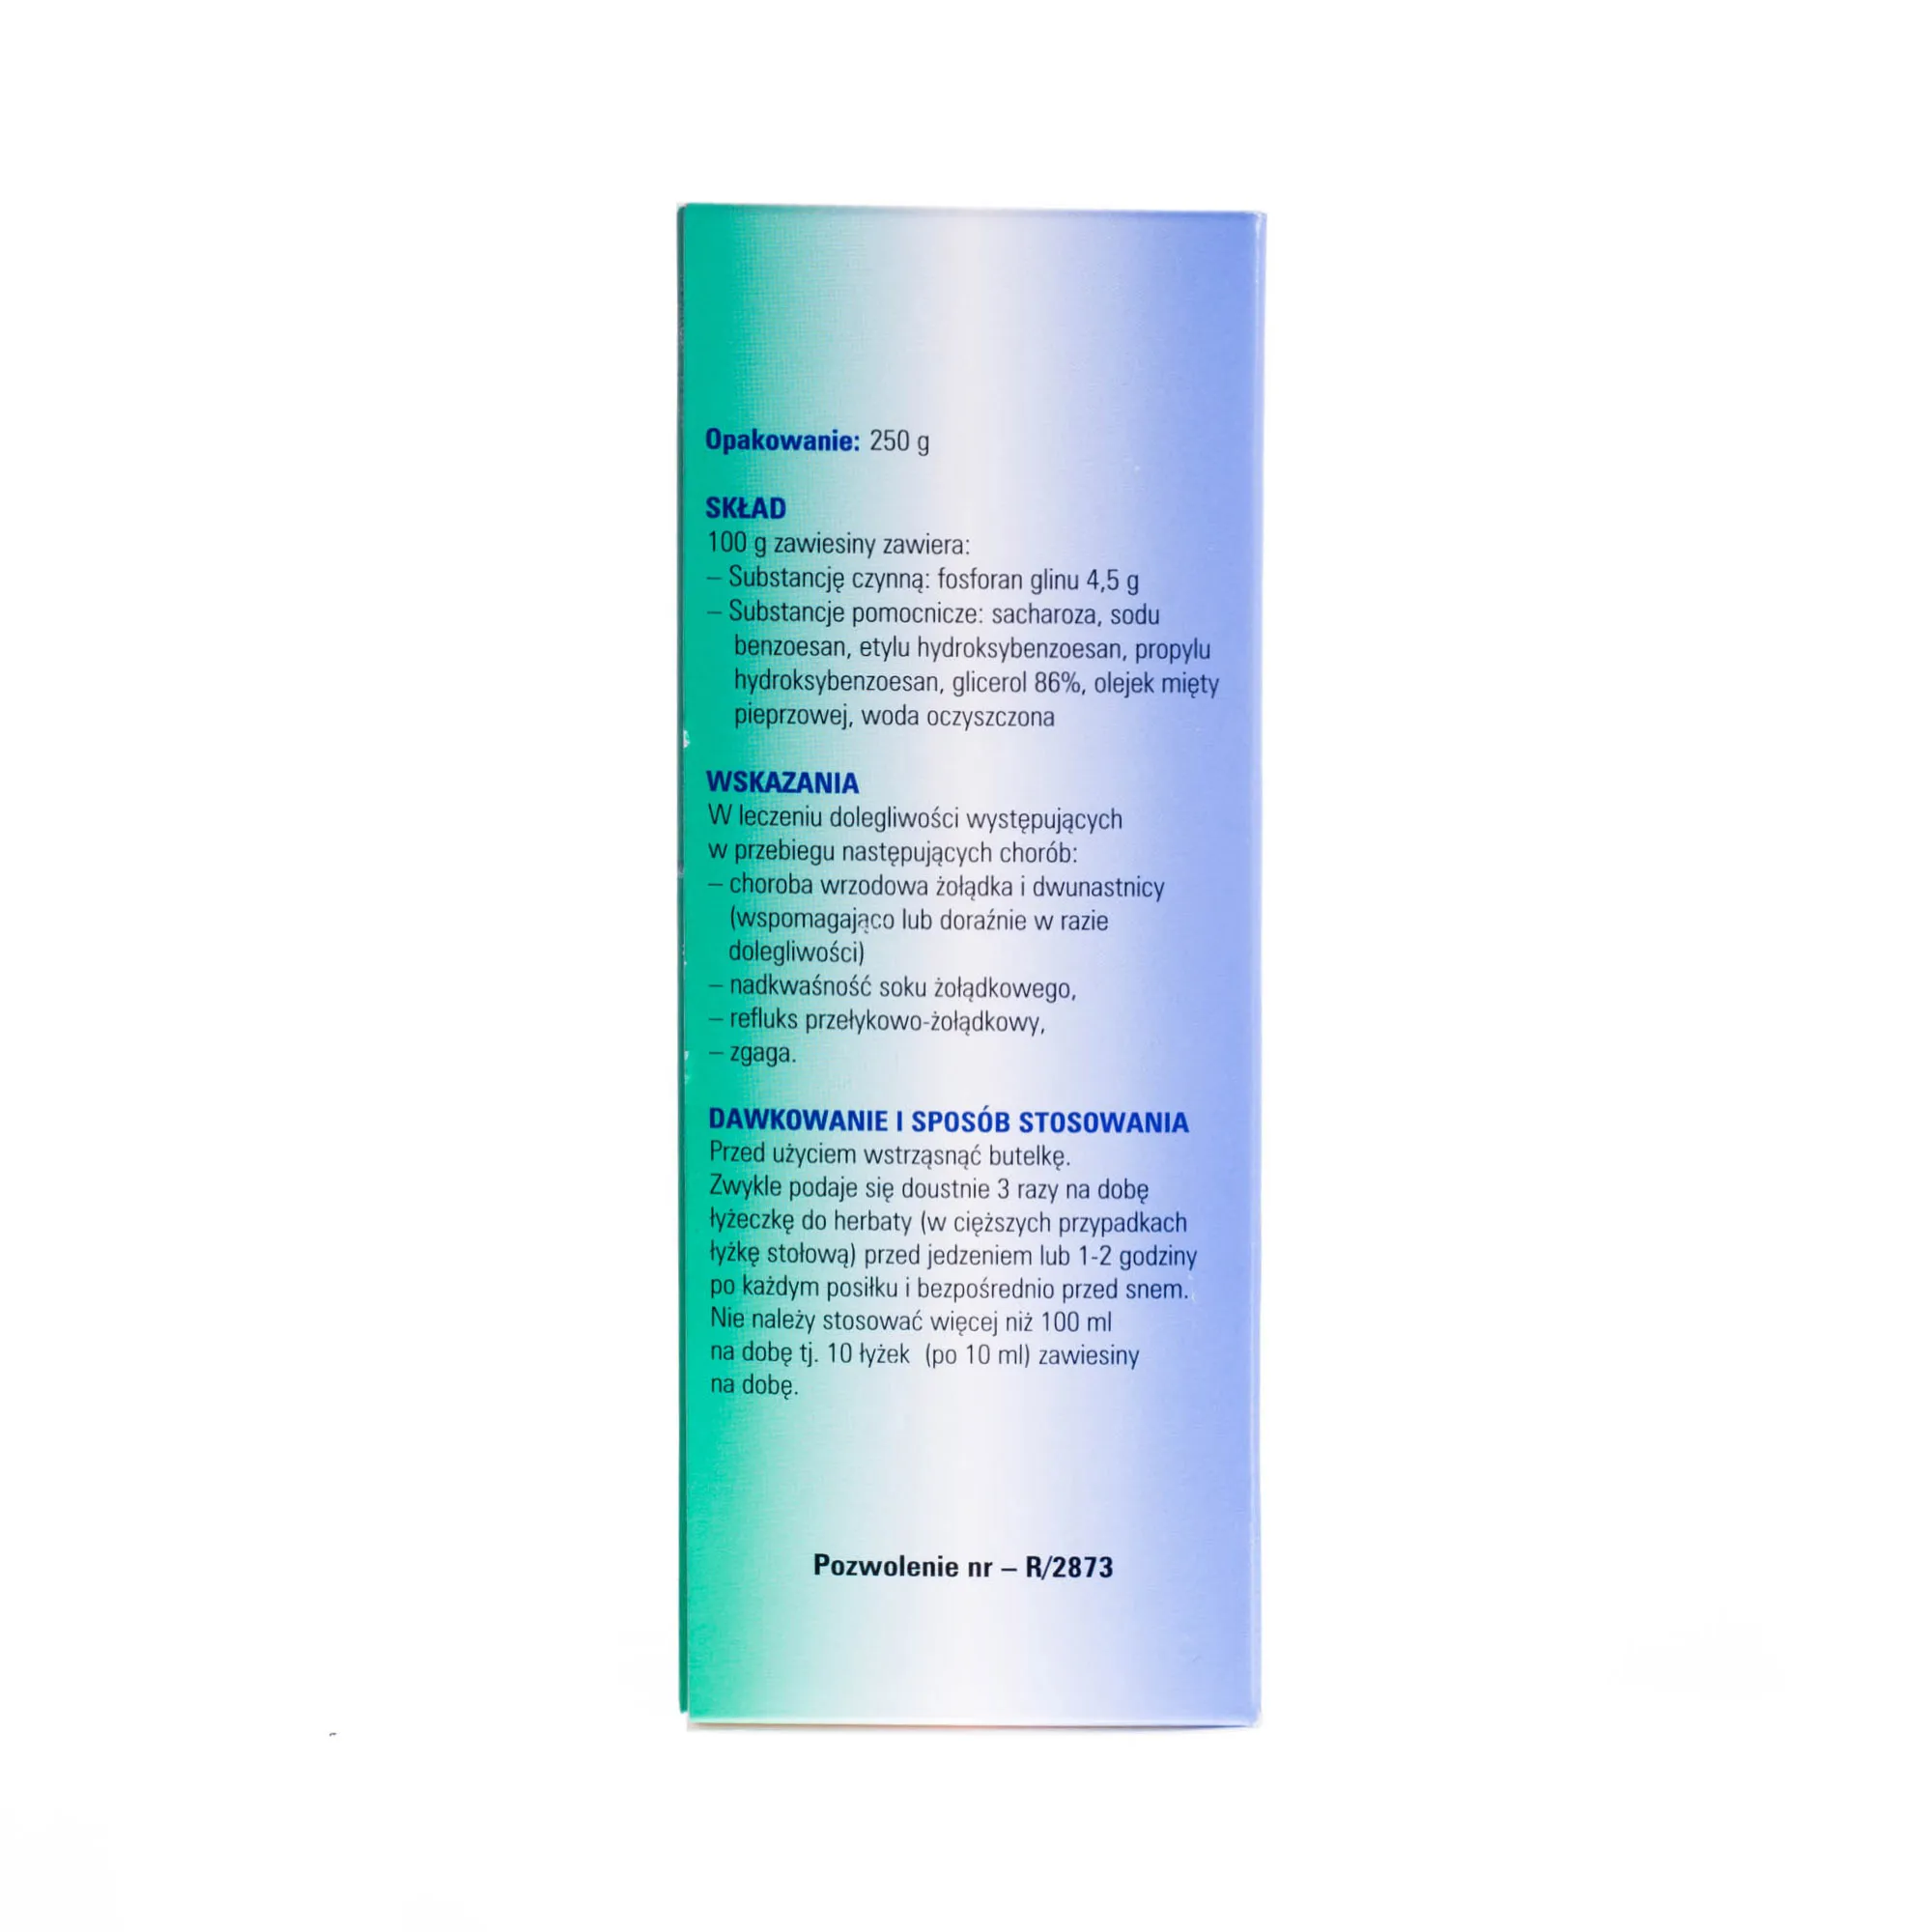 Gelatum Aluminii Phosphorici, 45mg/g, zawiesina doustna, 250 g 